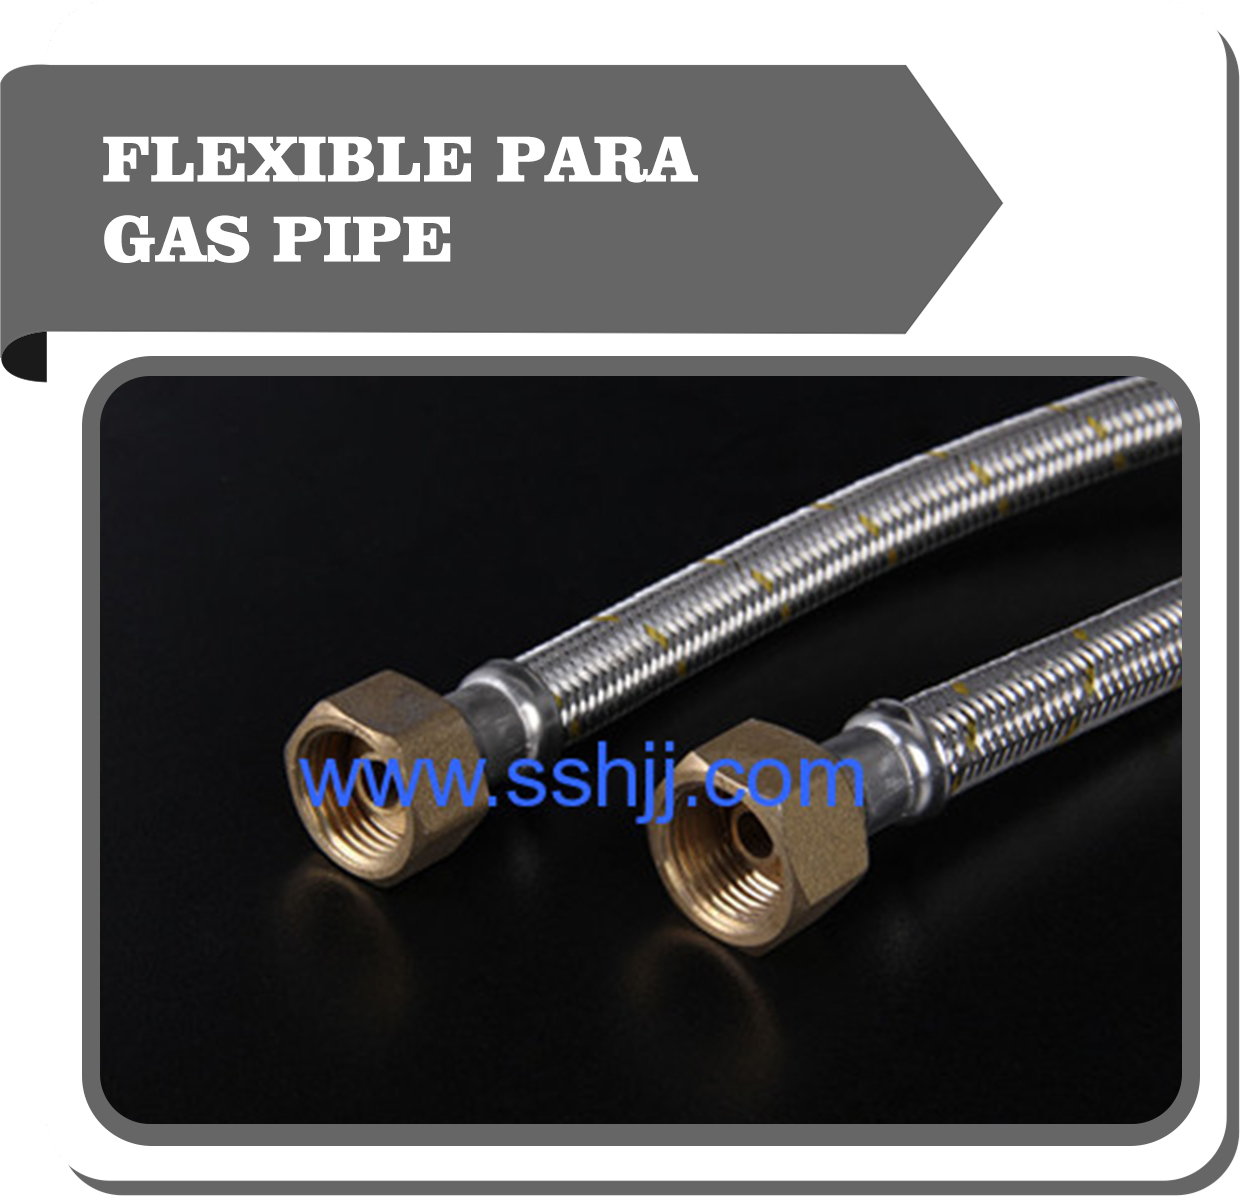 Flexible para gas hose